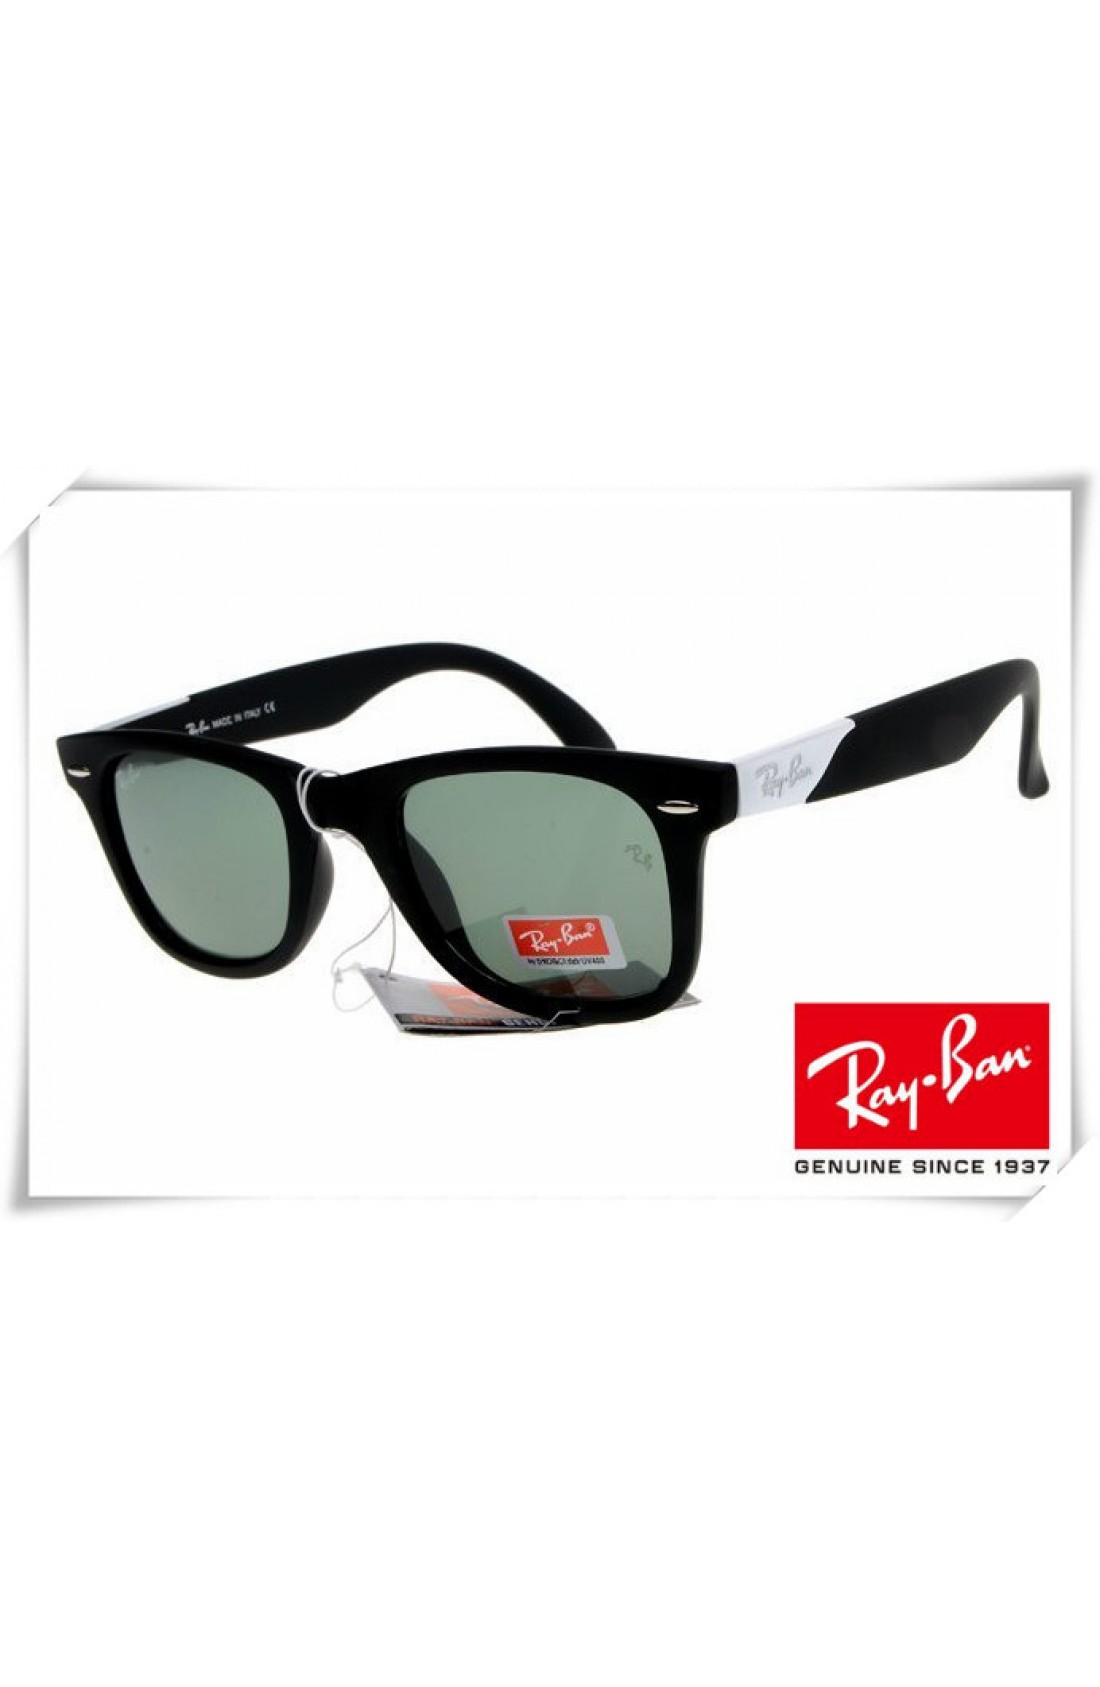 ray ban wayfarer sunglasses matte black